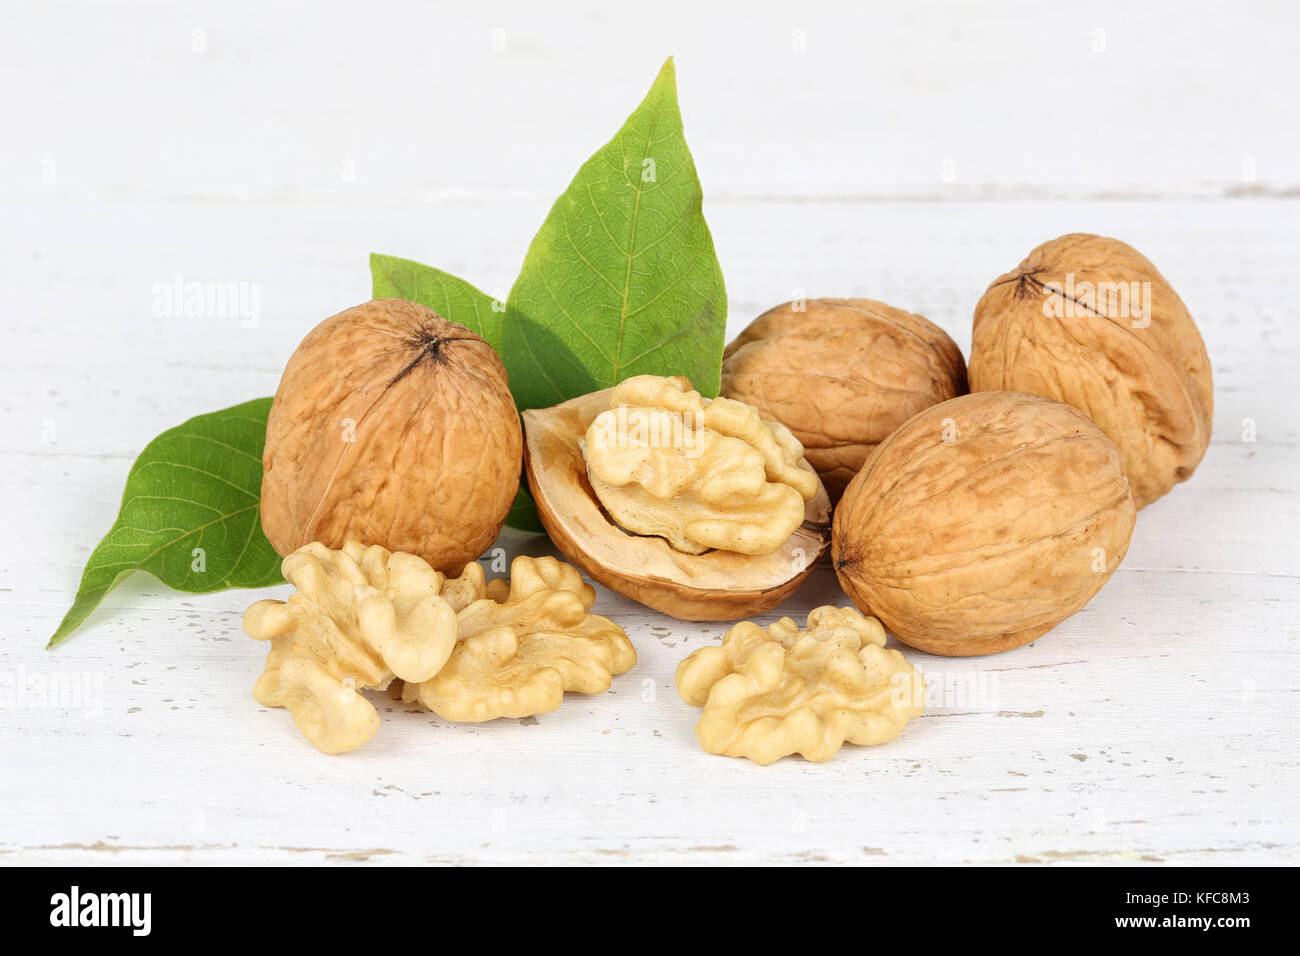 Walnuts walnut nuts on wooden board food Stock Photo